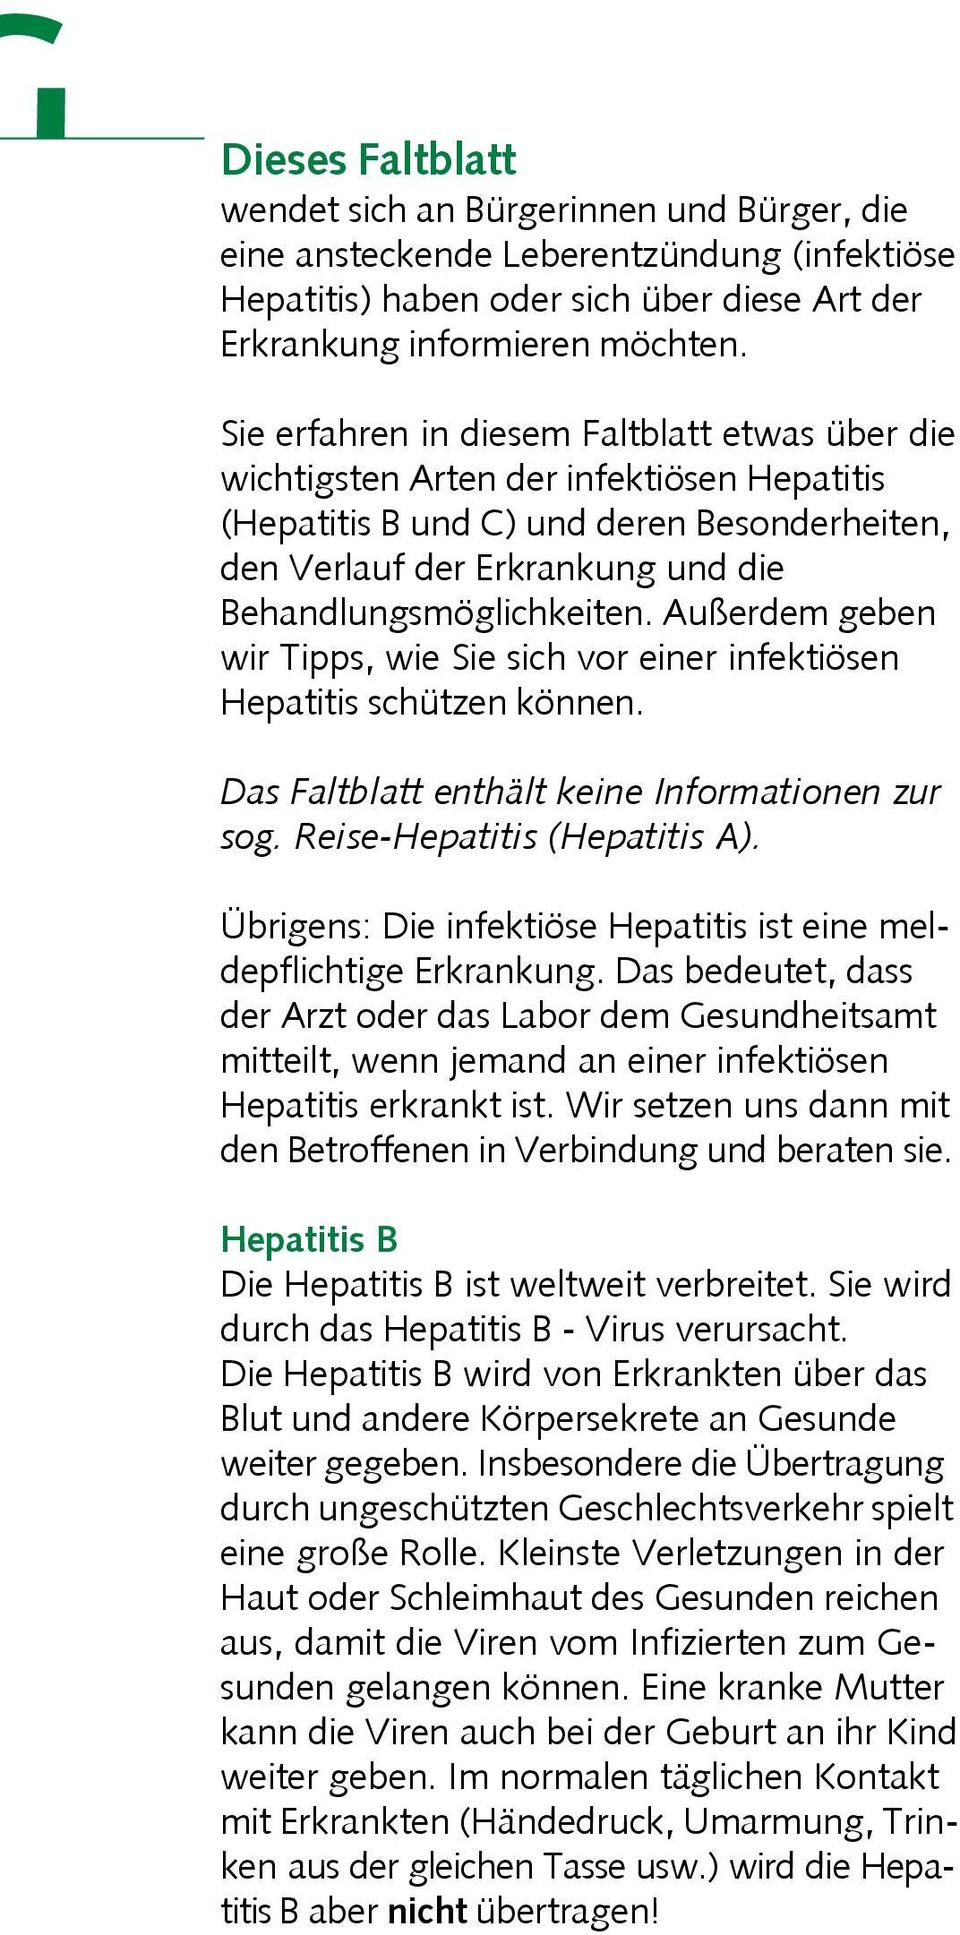 Außerdem geben wir Tipps, wie Sie sich vor einer infektiösen Hepatitis schützen können. Das Faltblatt enthält keine Informationen zur sog. Reise-Hepatitis (Hepatitis A).